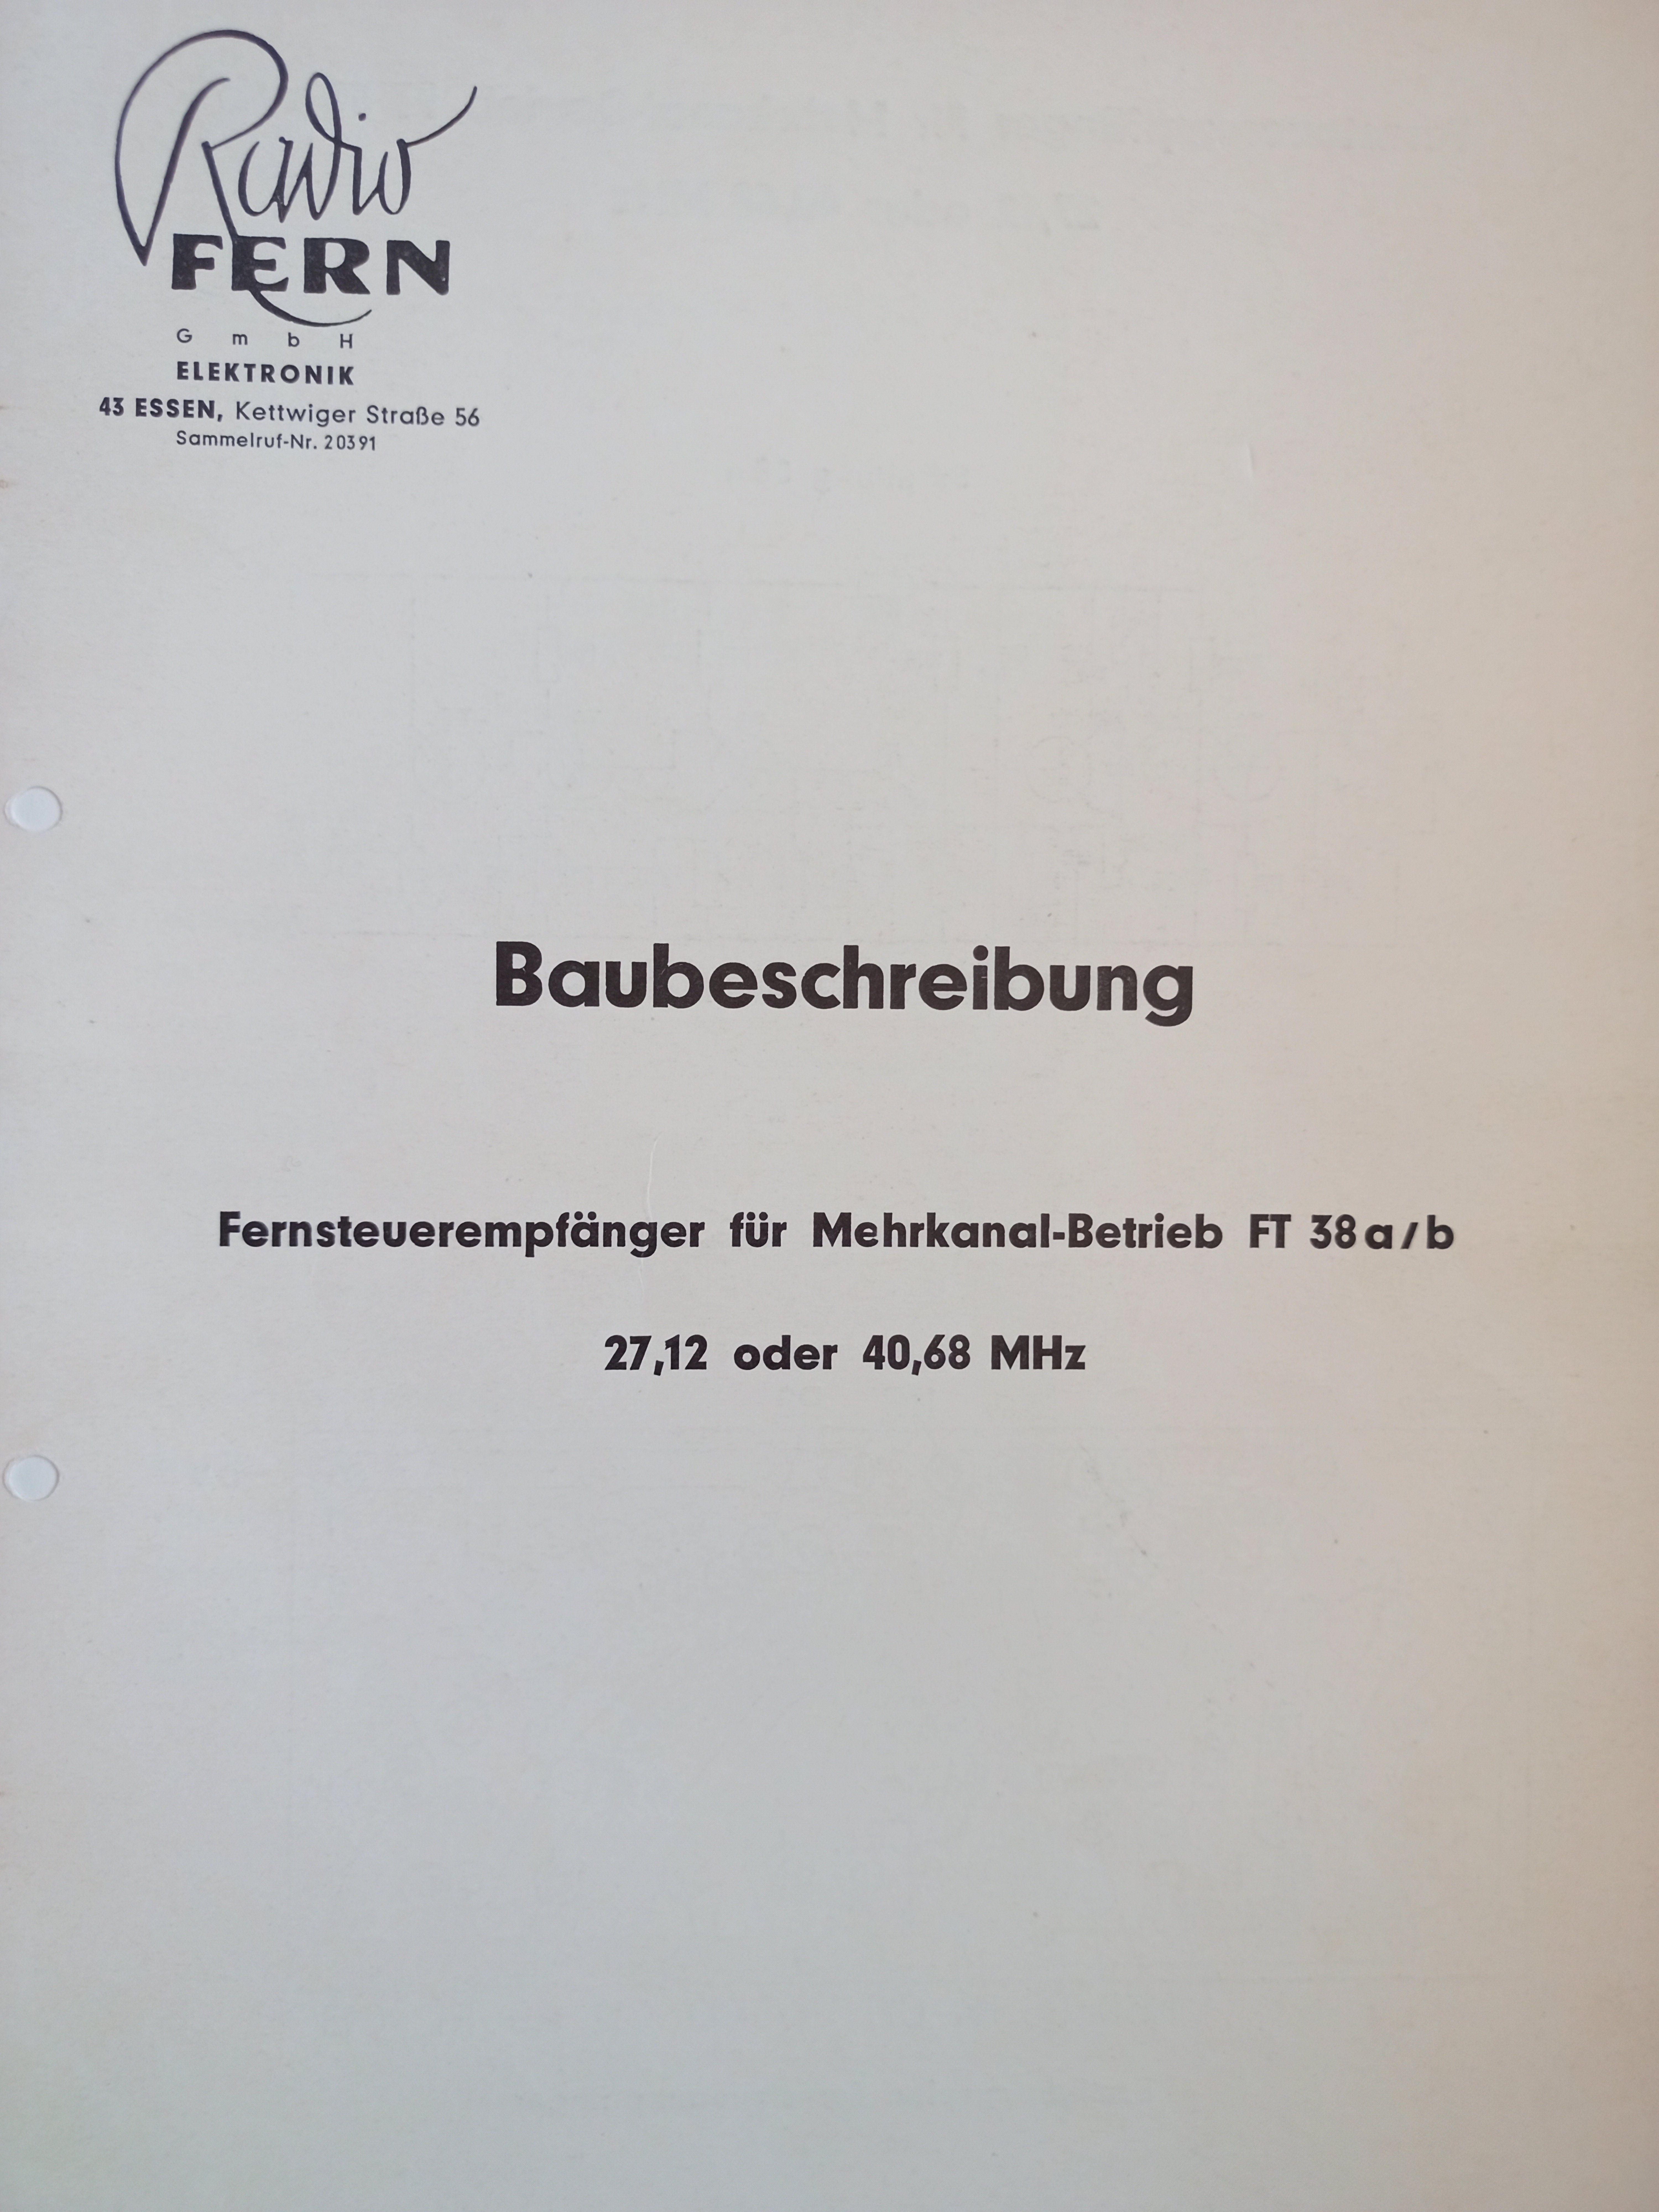 Radio Fern - Pläne und Beschreibung Empfänger (Deutsches Segelflugmuseum mit Modellflug CC BY-NC-SA)